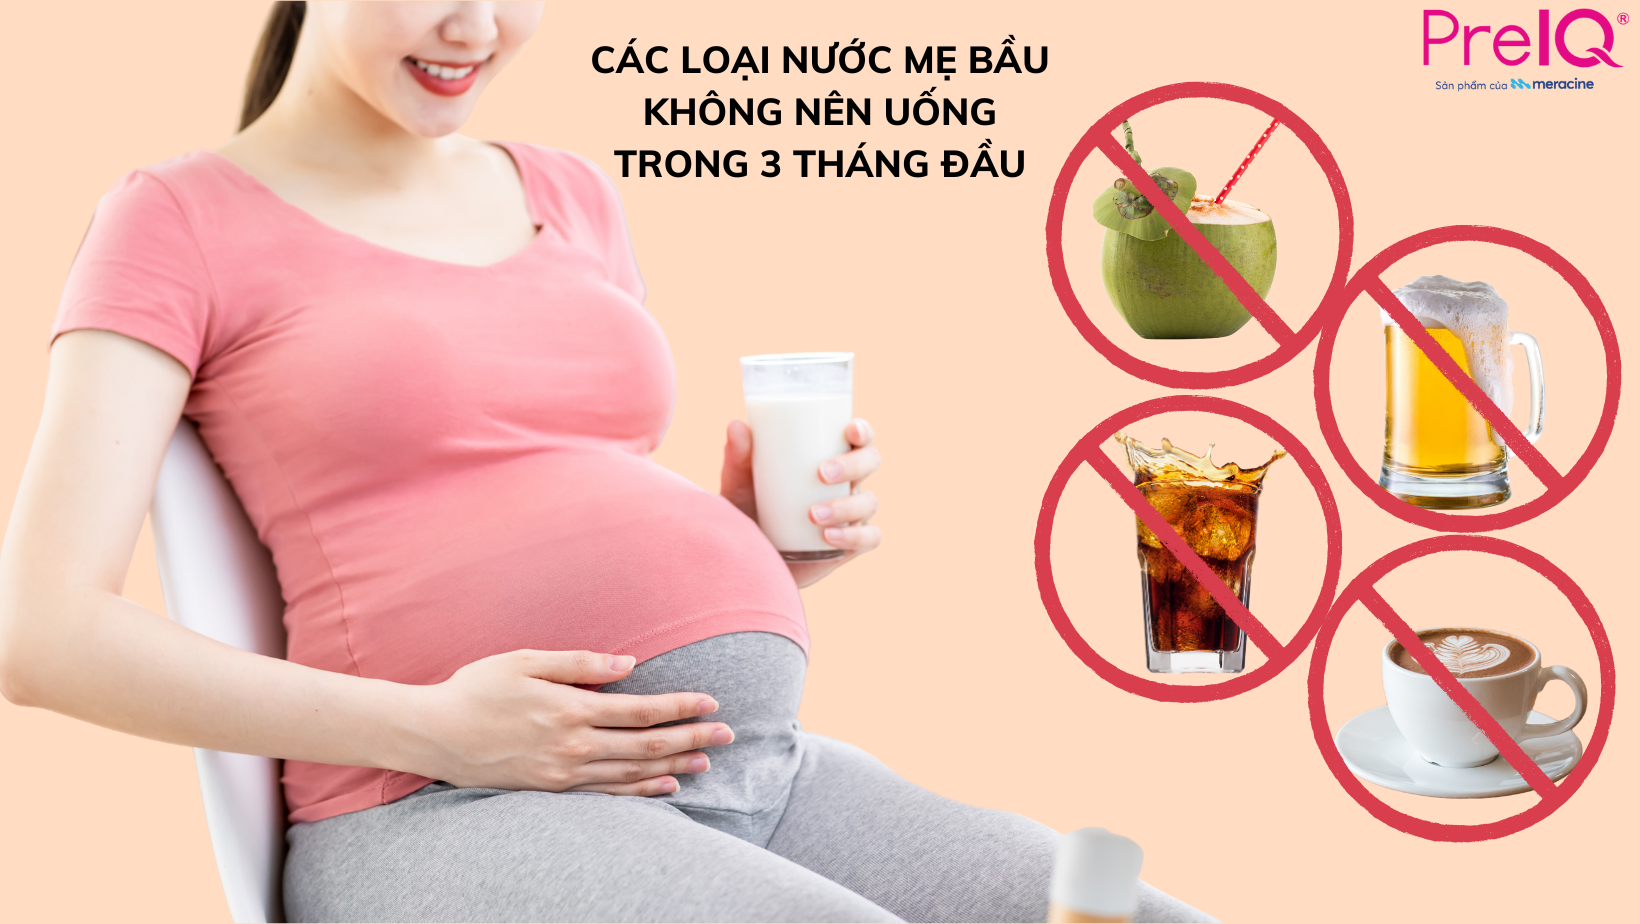 Các loại nước mẹ bầu hạn chế uống khi mang thai 3 tháng đầu